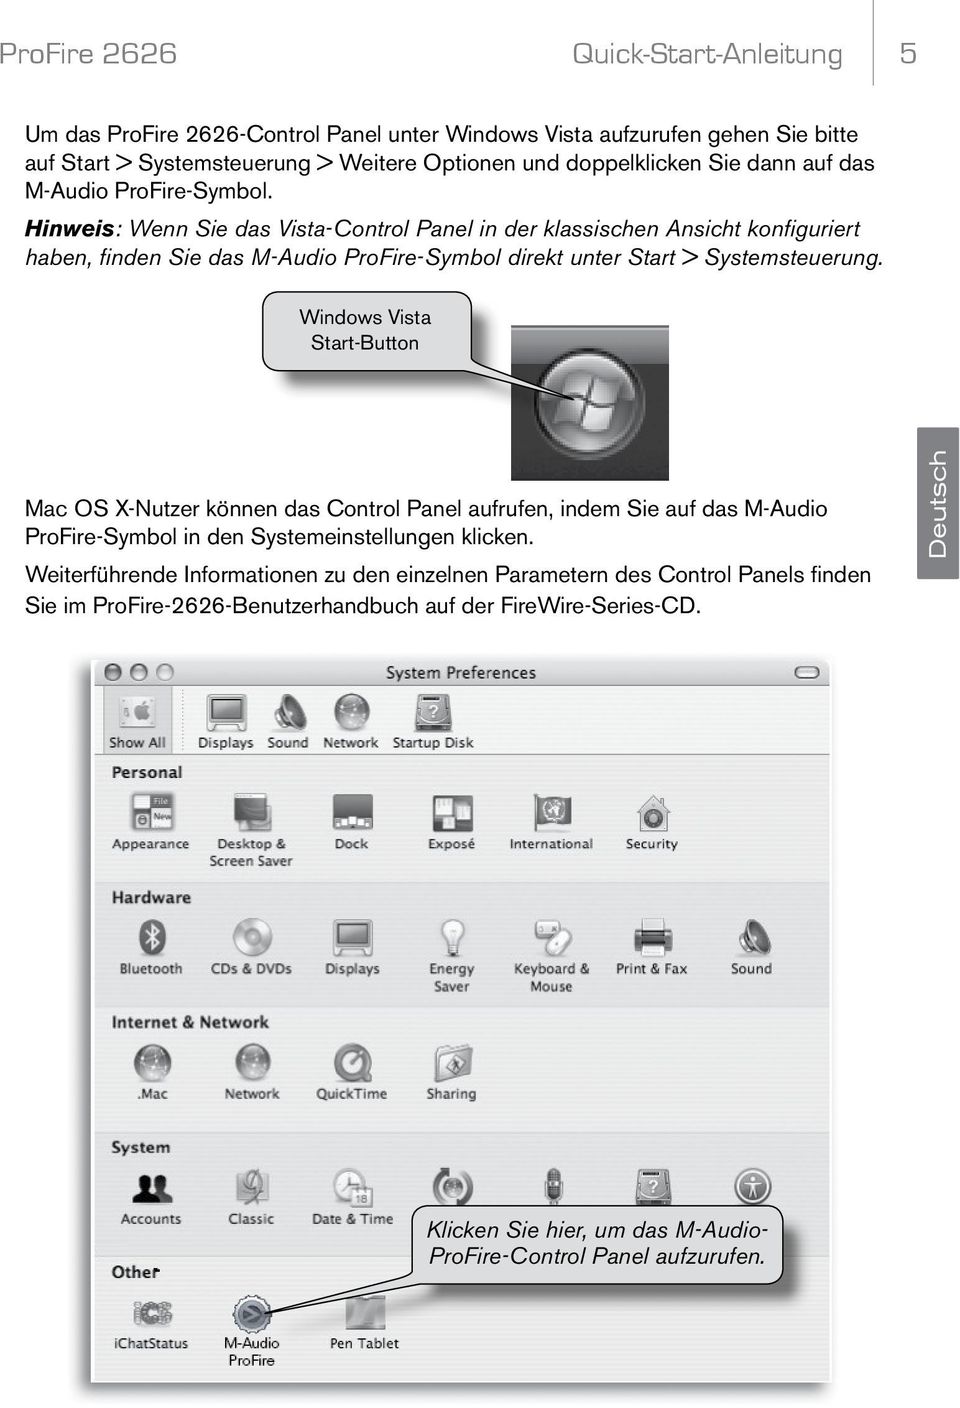 Windows Vista Start-Button Mac OS X-Nutzer können das Control Panel aufrufen, indem Sie auf das M-Audio ProFire-Symbol in den Systemeinstellungen klicken.